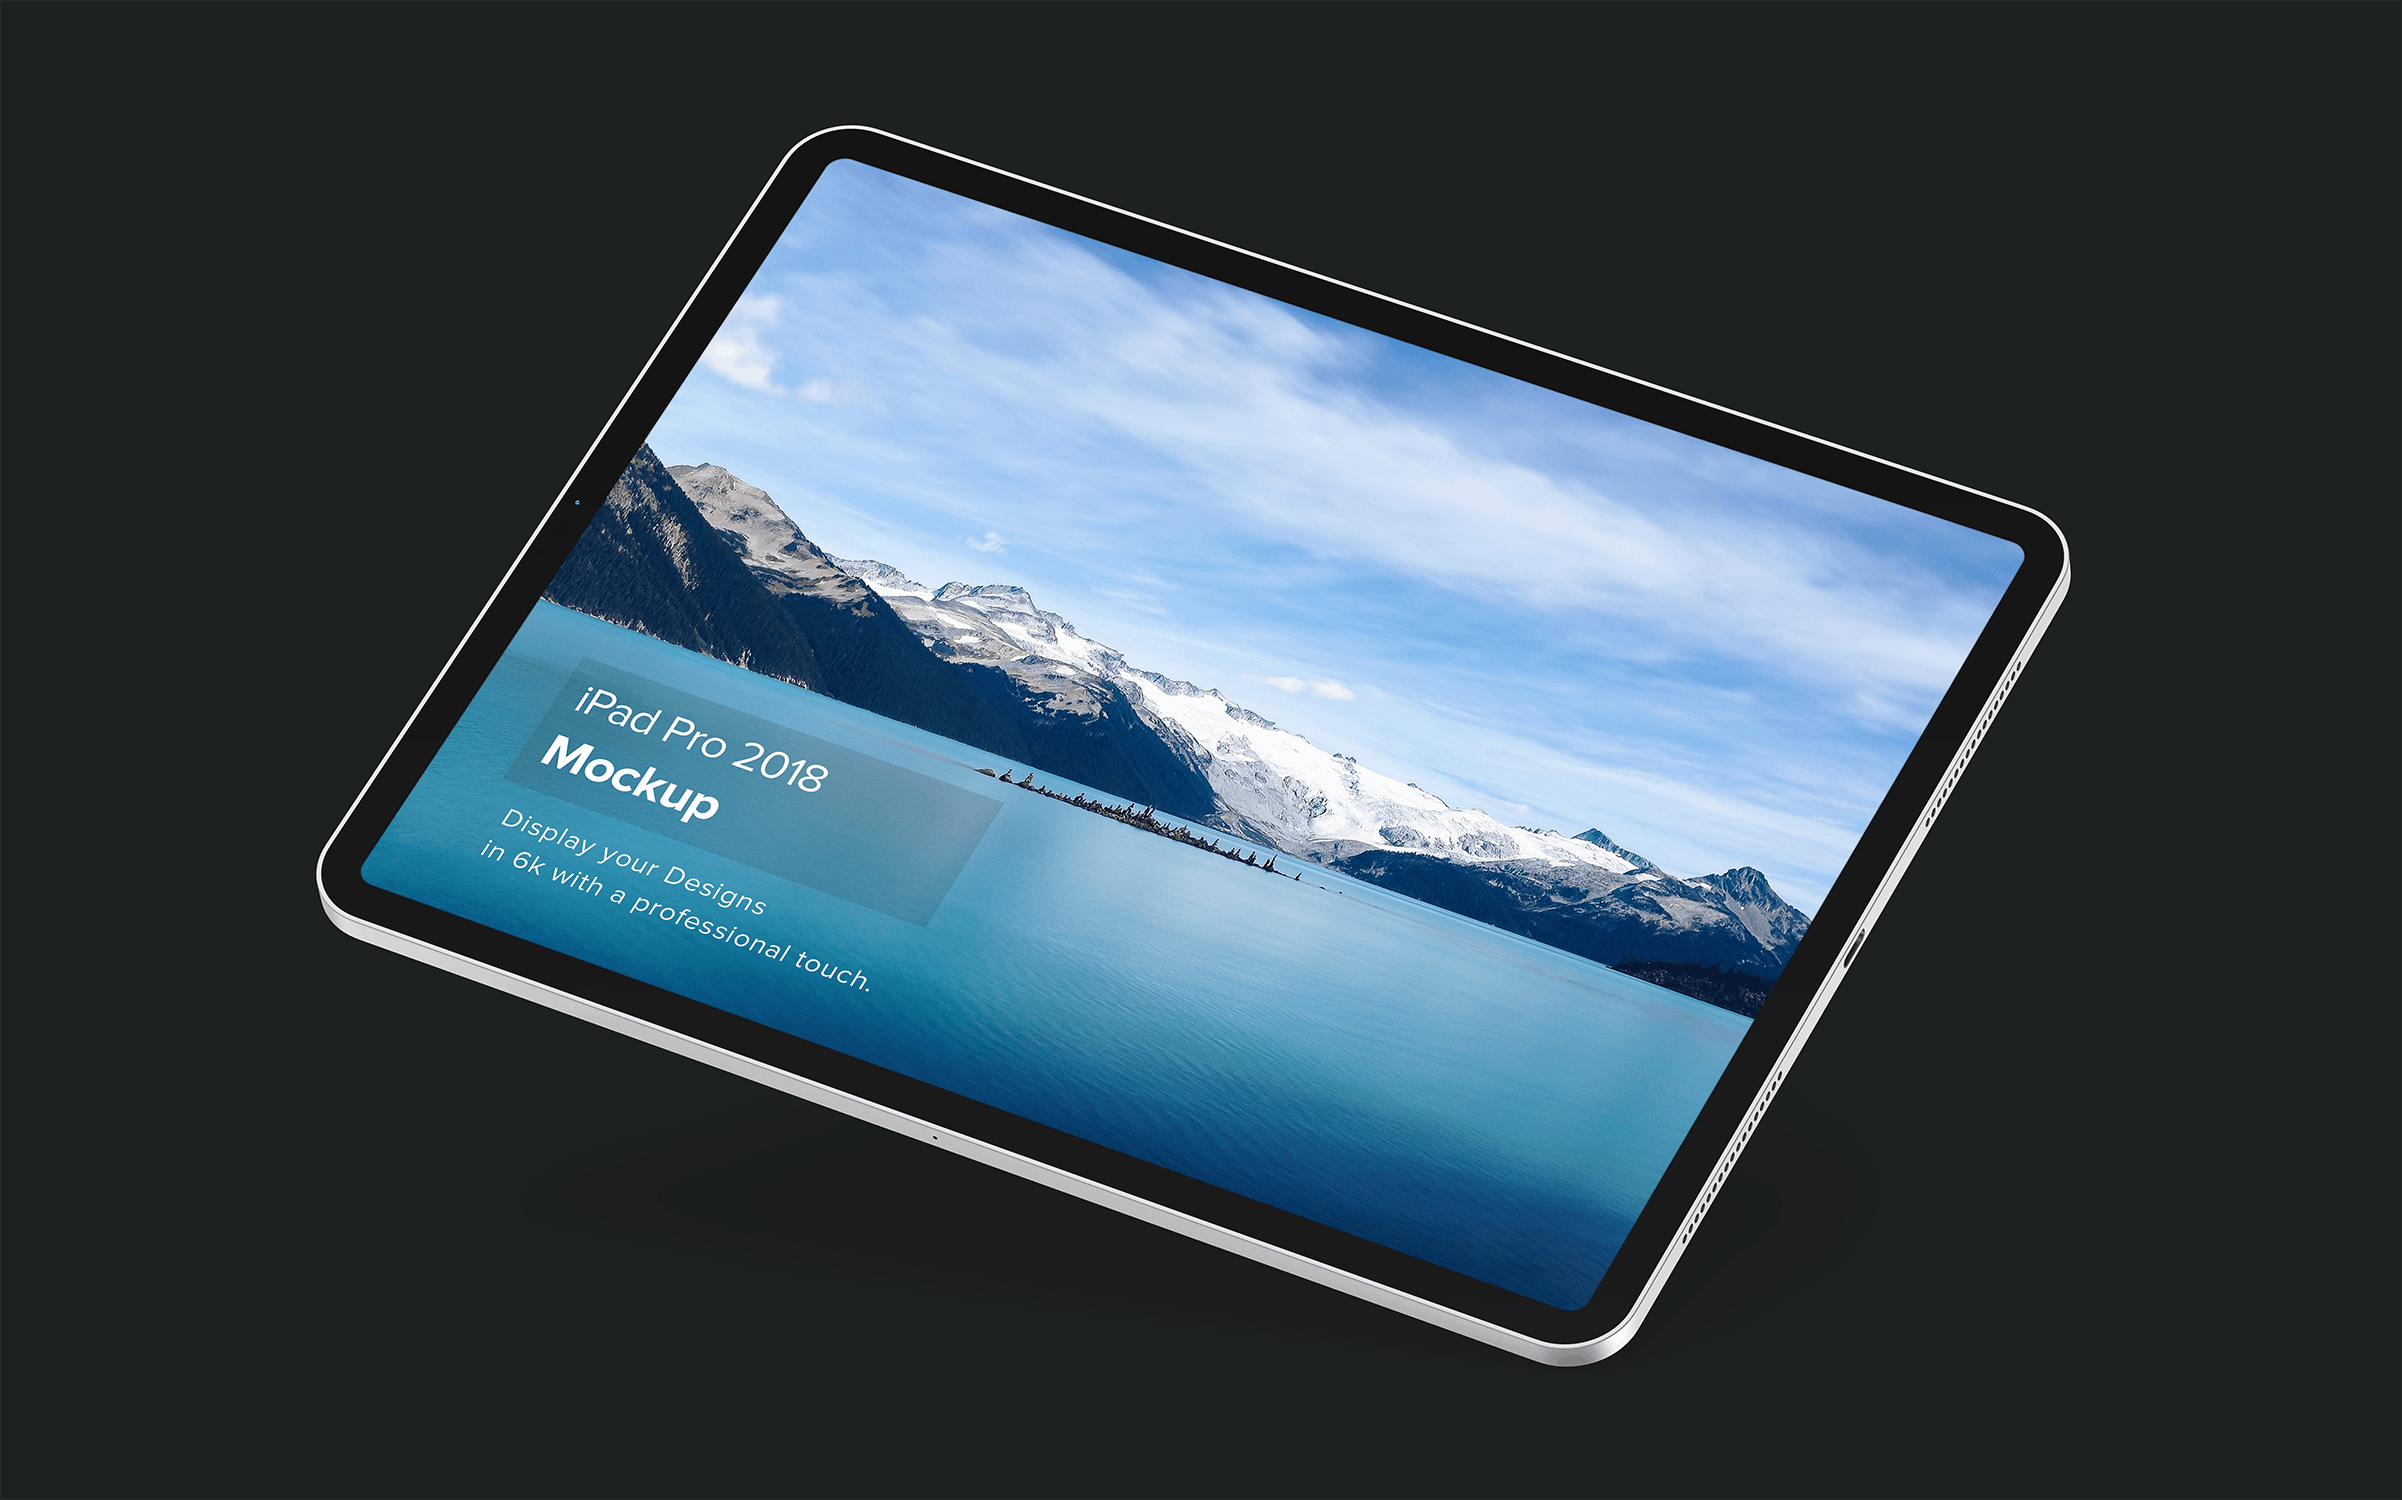 iPad Pro专业平板电脑设计演示蚂蚁素材精选样机模板套装v2 iPad Mockup 2.0插图(6)